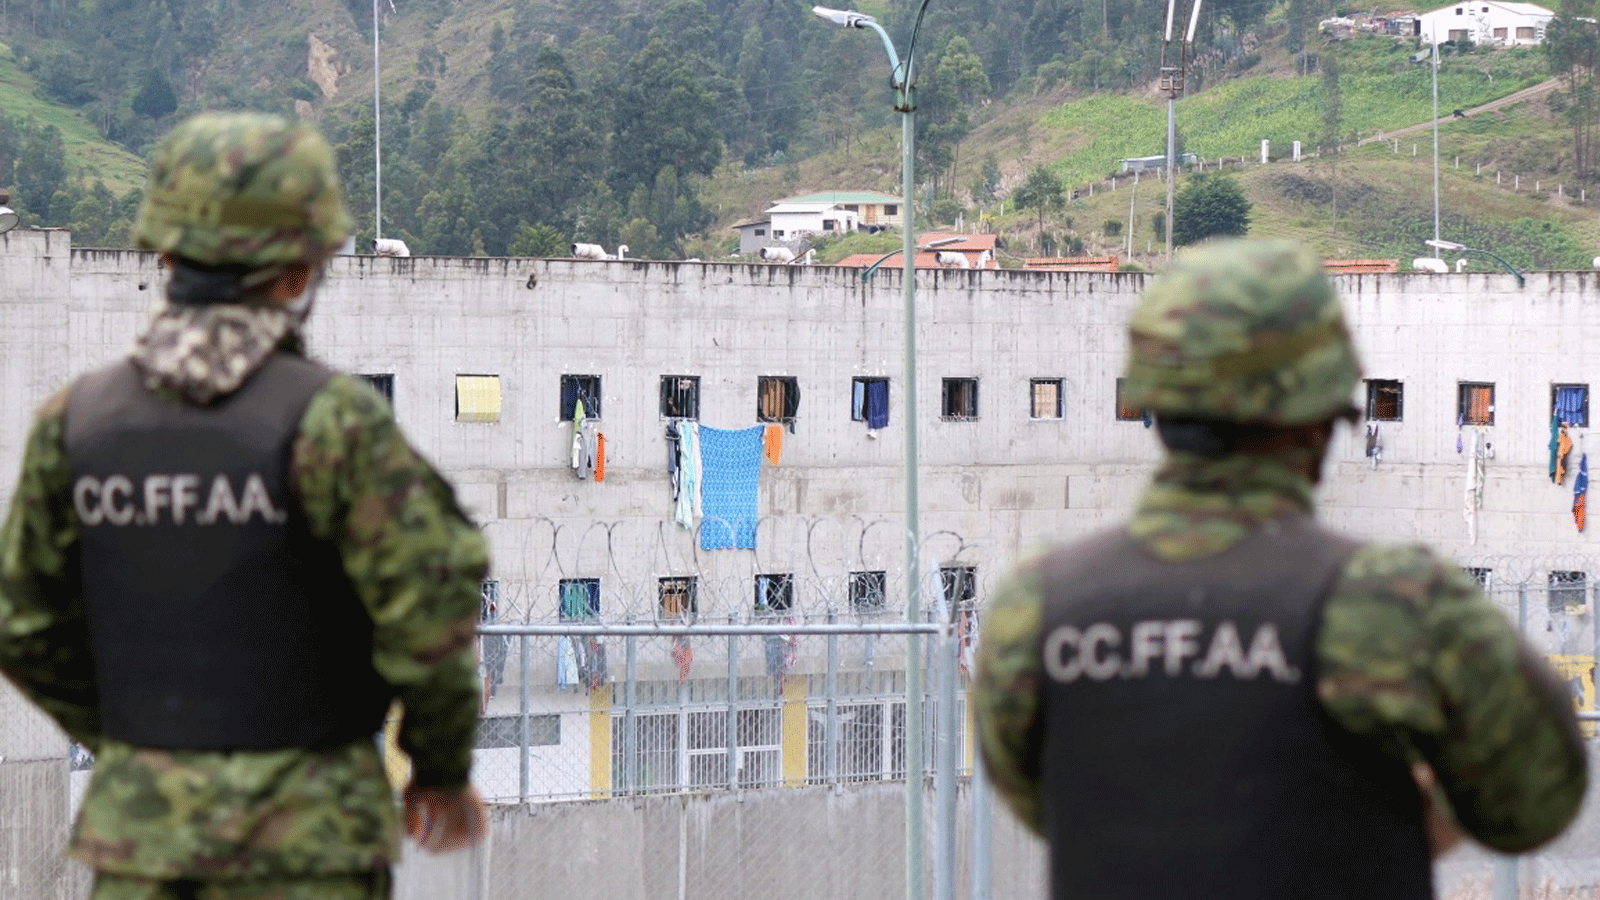 جنود يقفون في حراسة خارج سجن CRS Turi في كوينكا